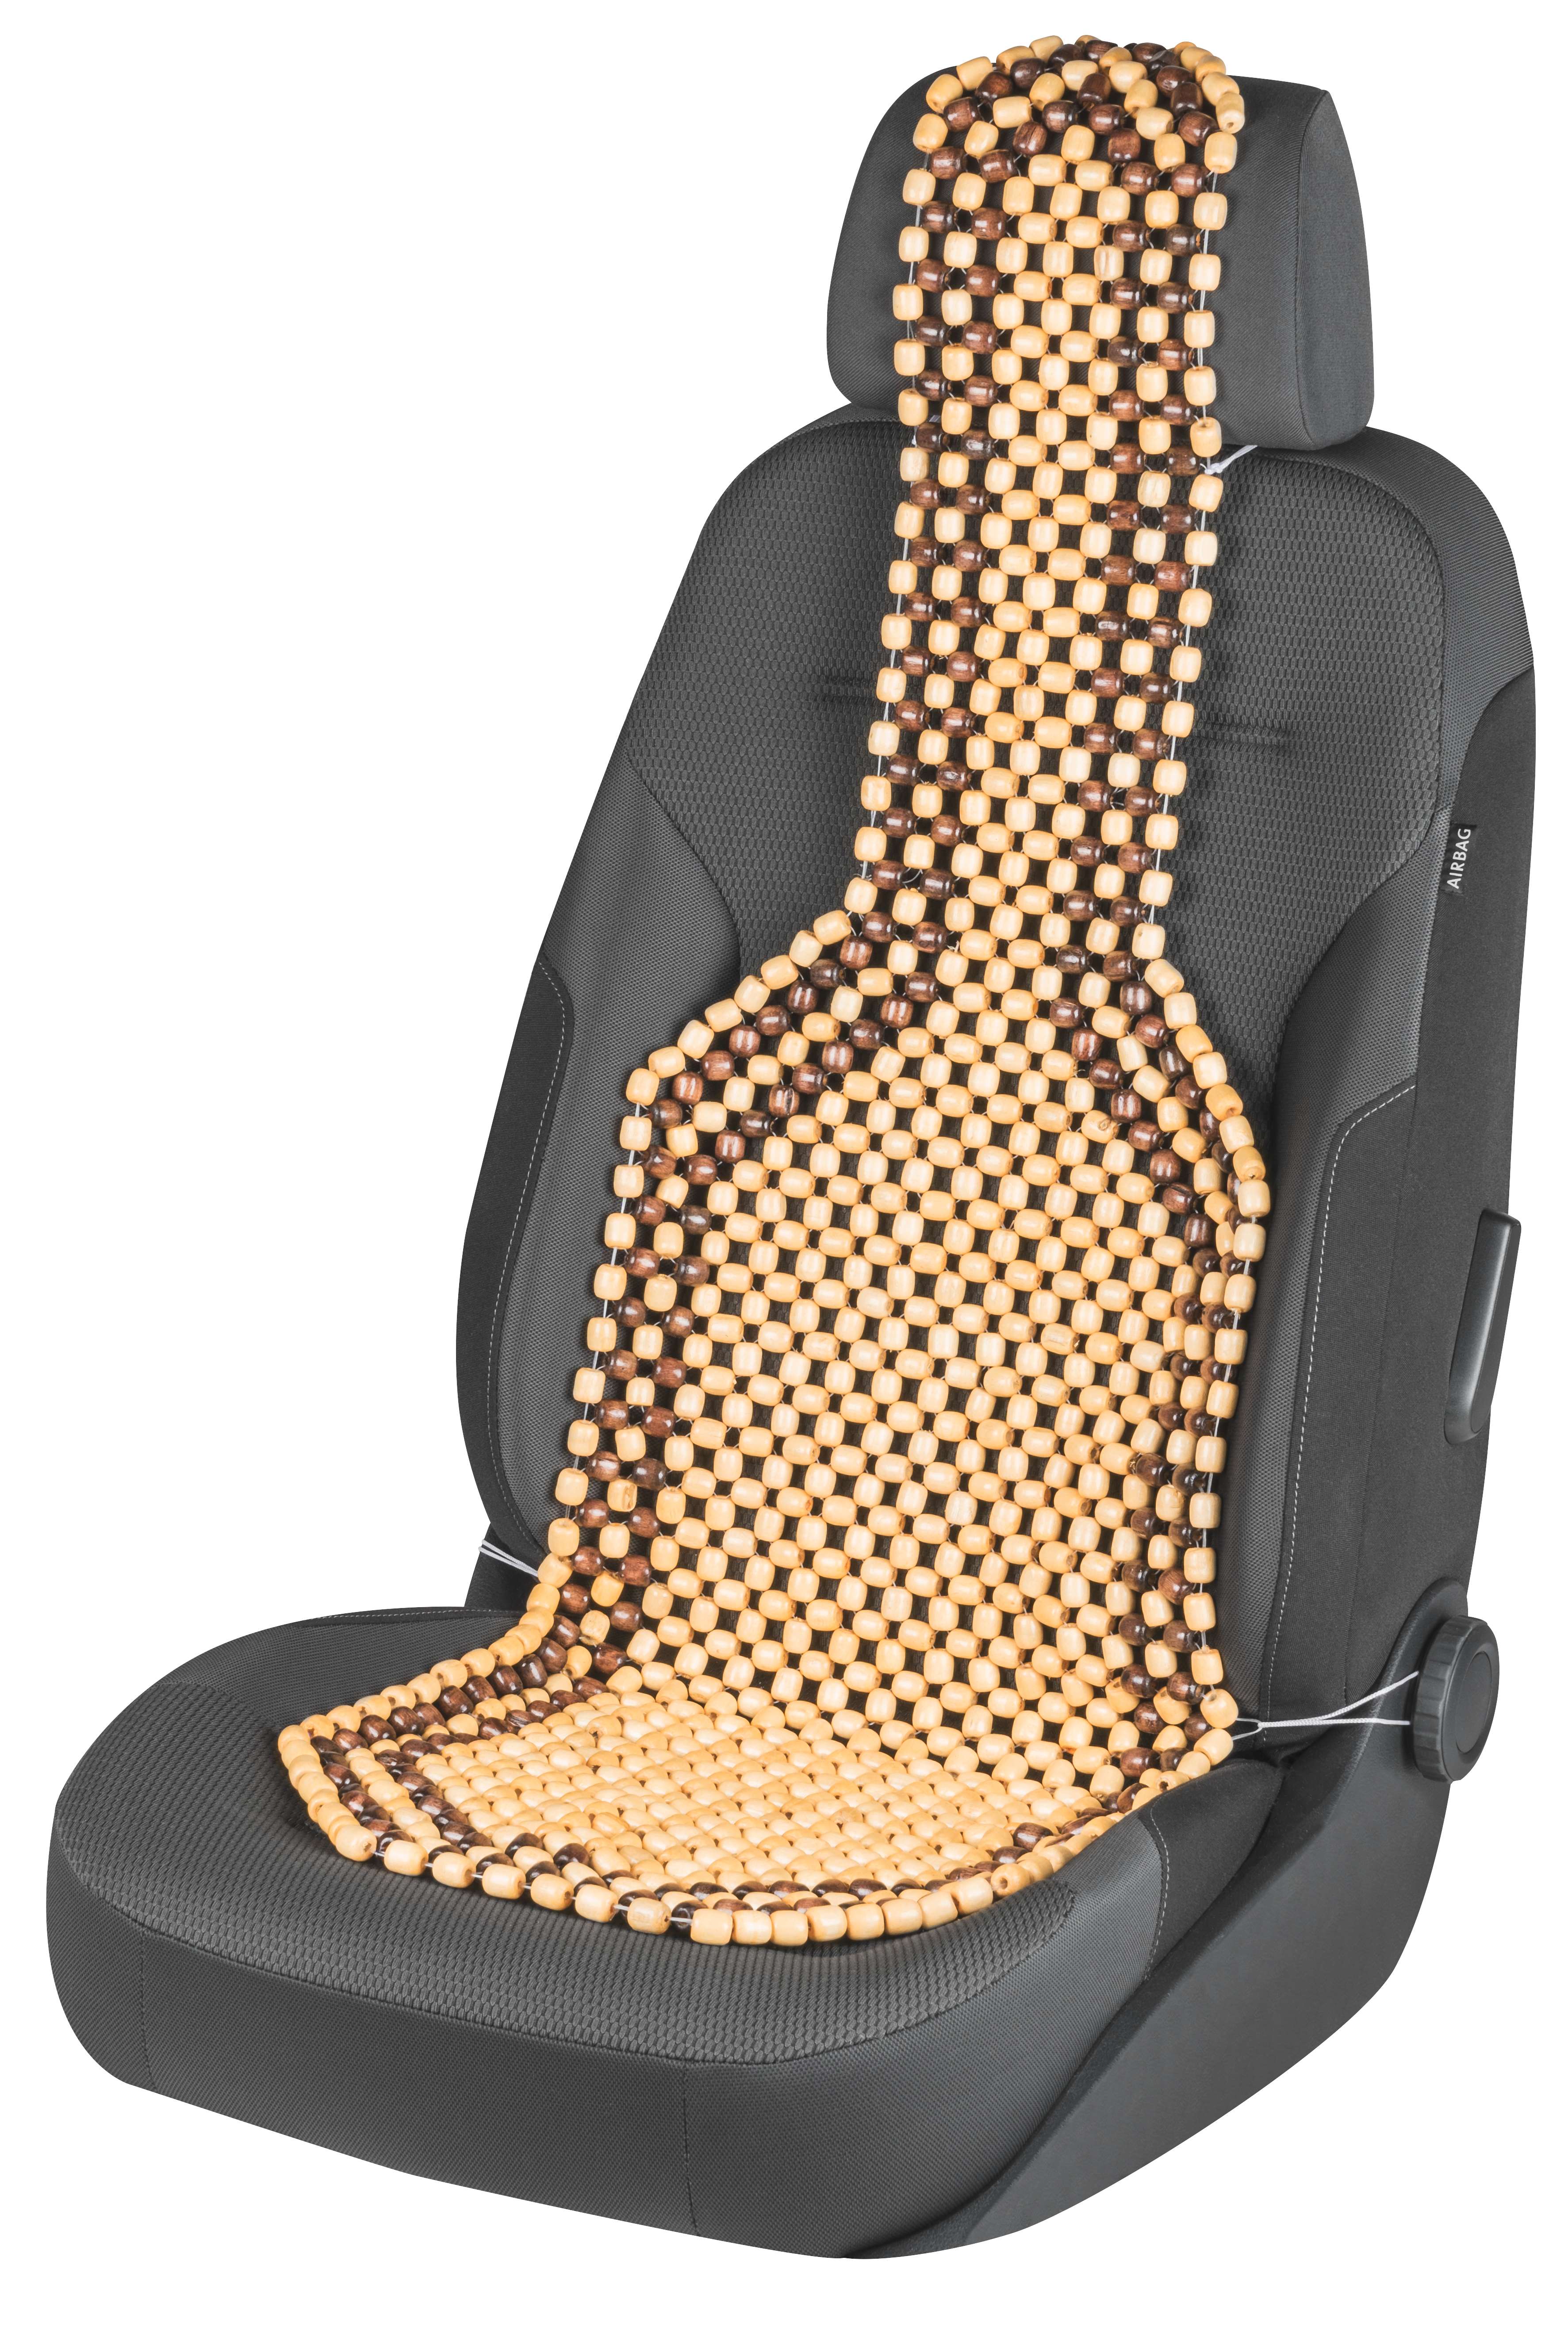 Luxus Auto Sitzkissen Hand-woven Eis Seide mit Holz Perlen Auto